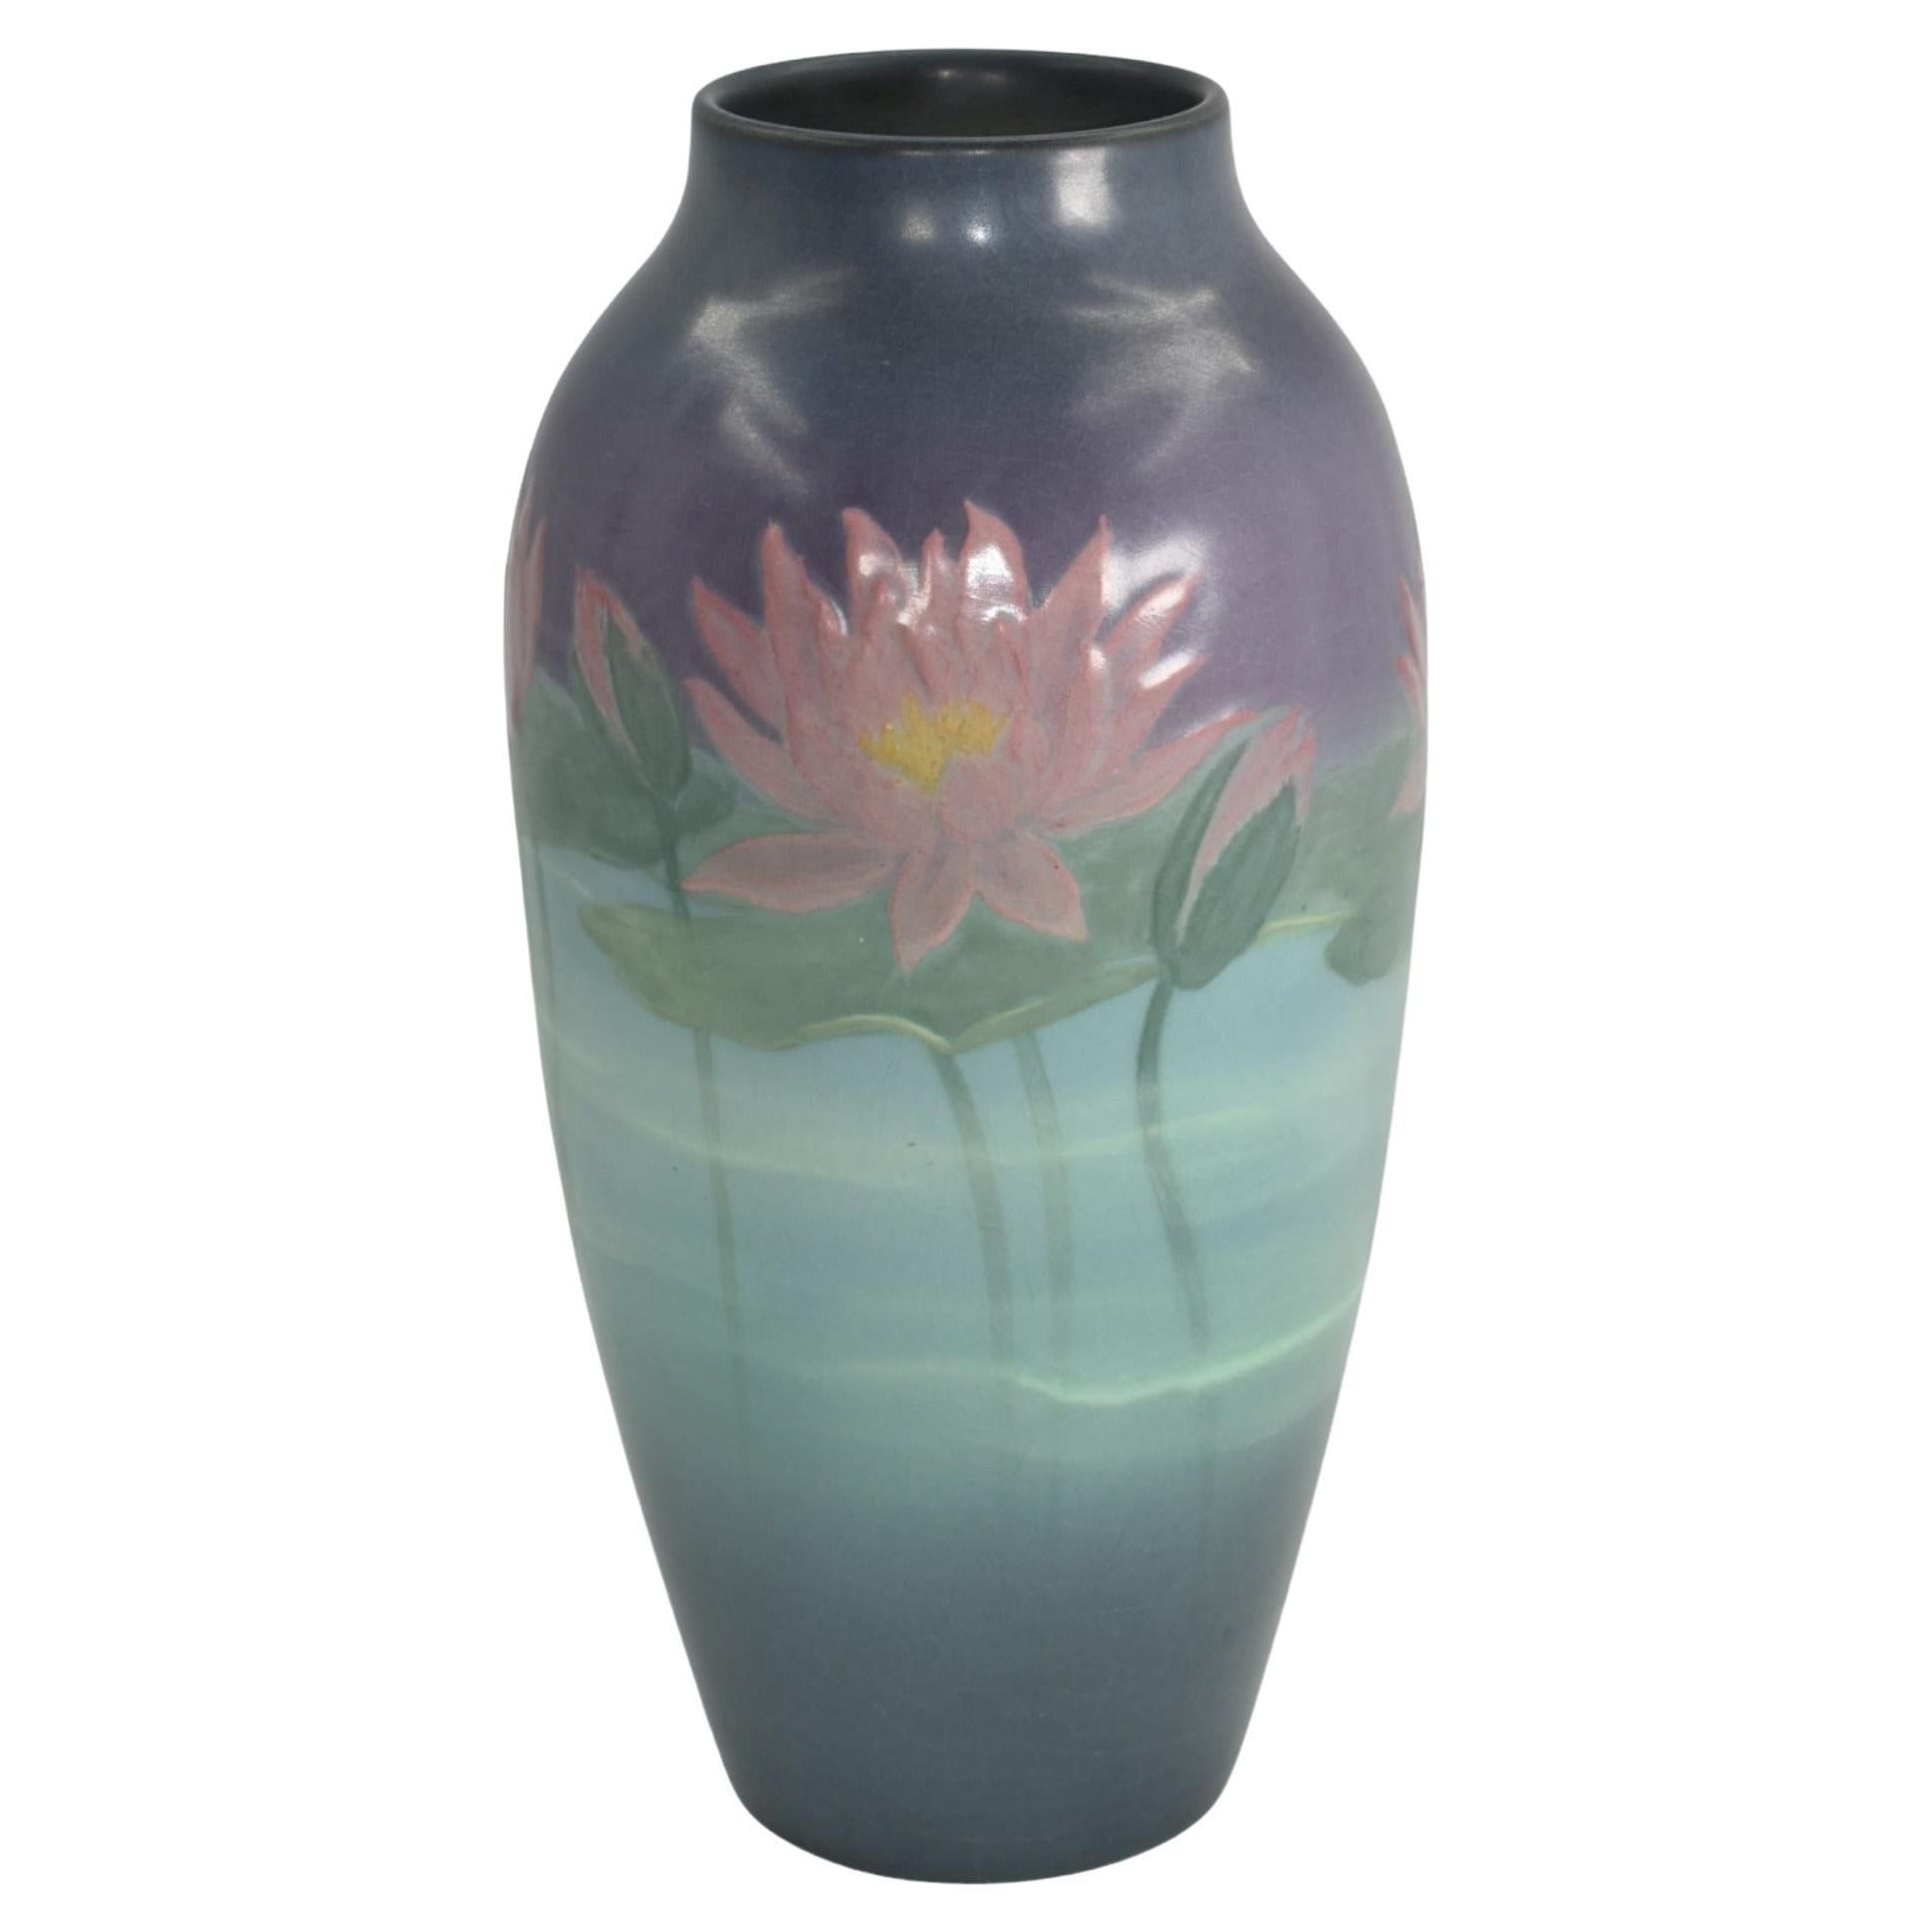 Rookwood 1925 Vintage Arts And Crafts Pottery Ceramic Flower Vase 977 (Hurley)